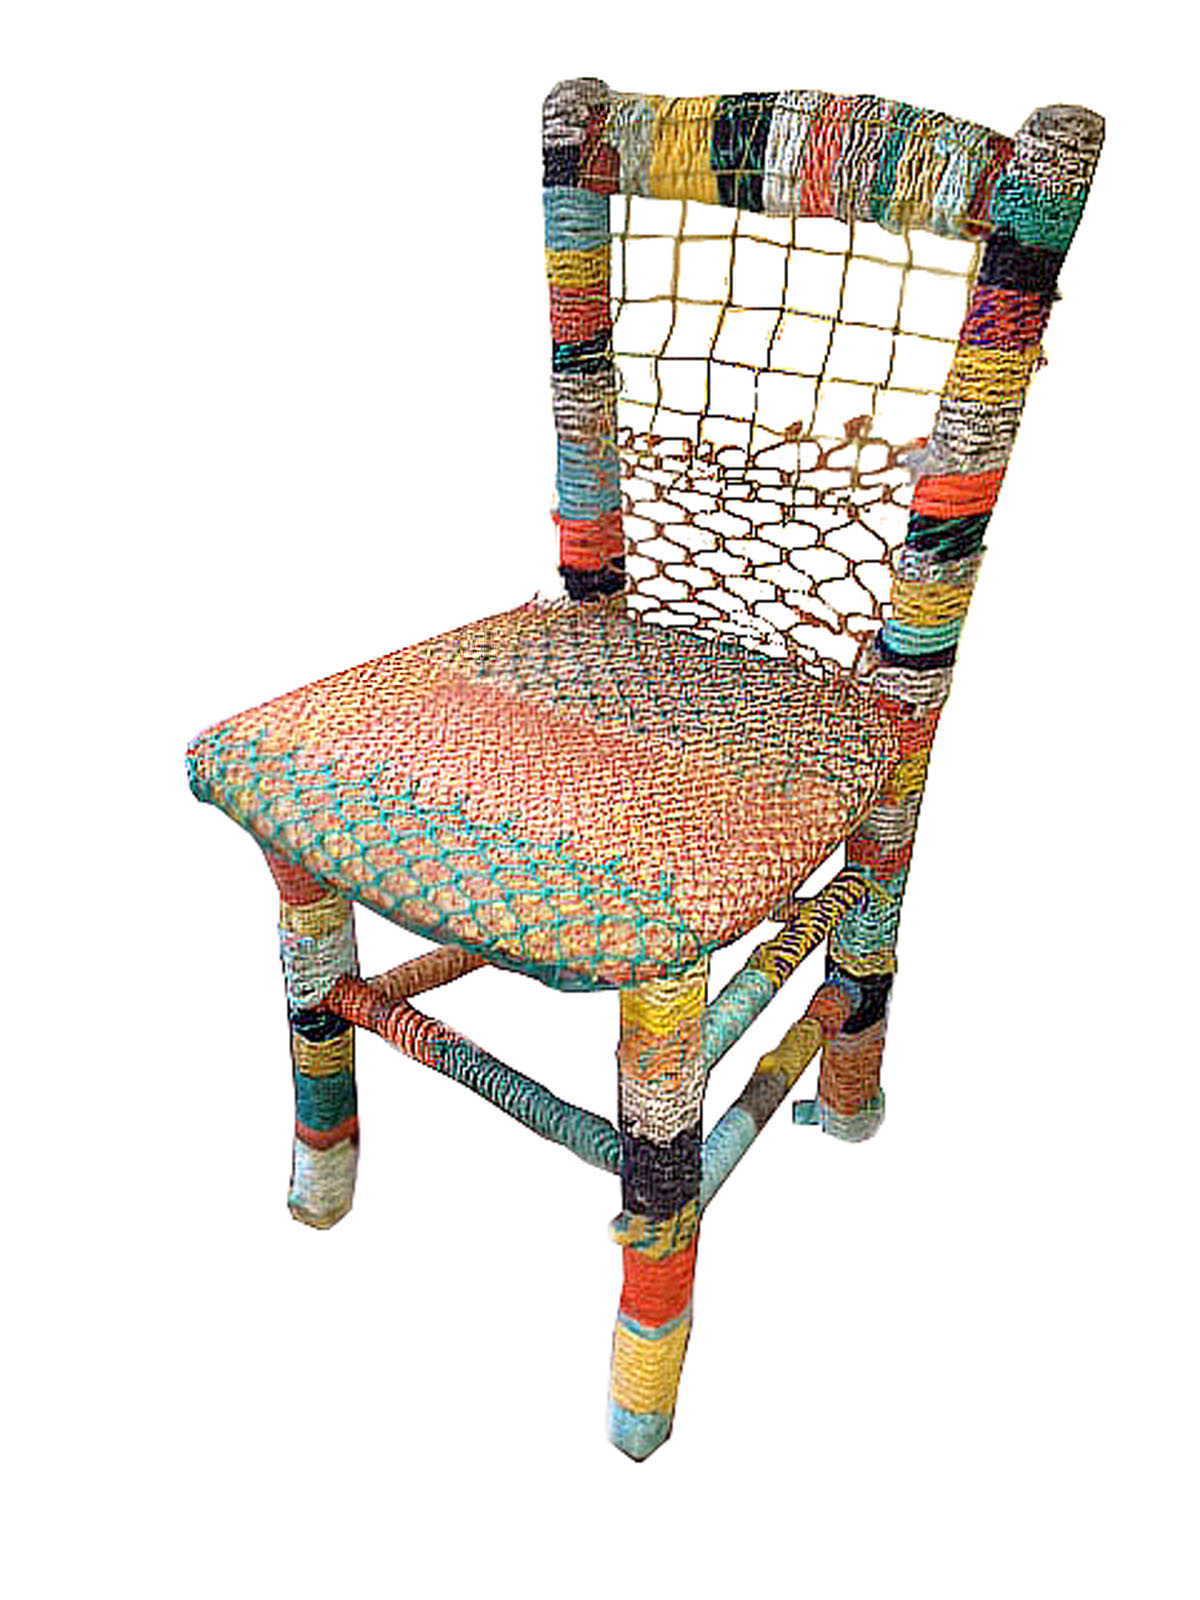    Warp Chair    found warp line, fishing net, bait trap, dining chair  36" x 22" x 18"  2012  (sold) 